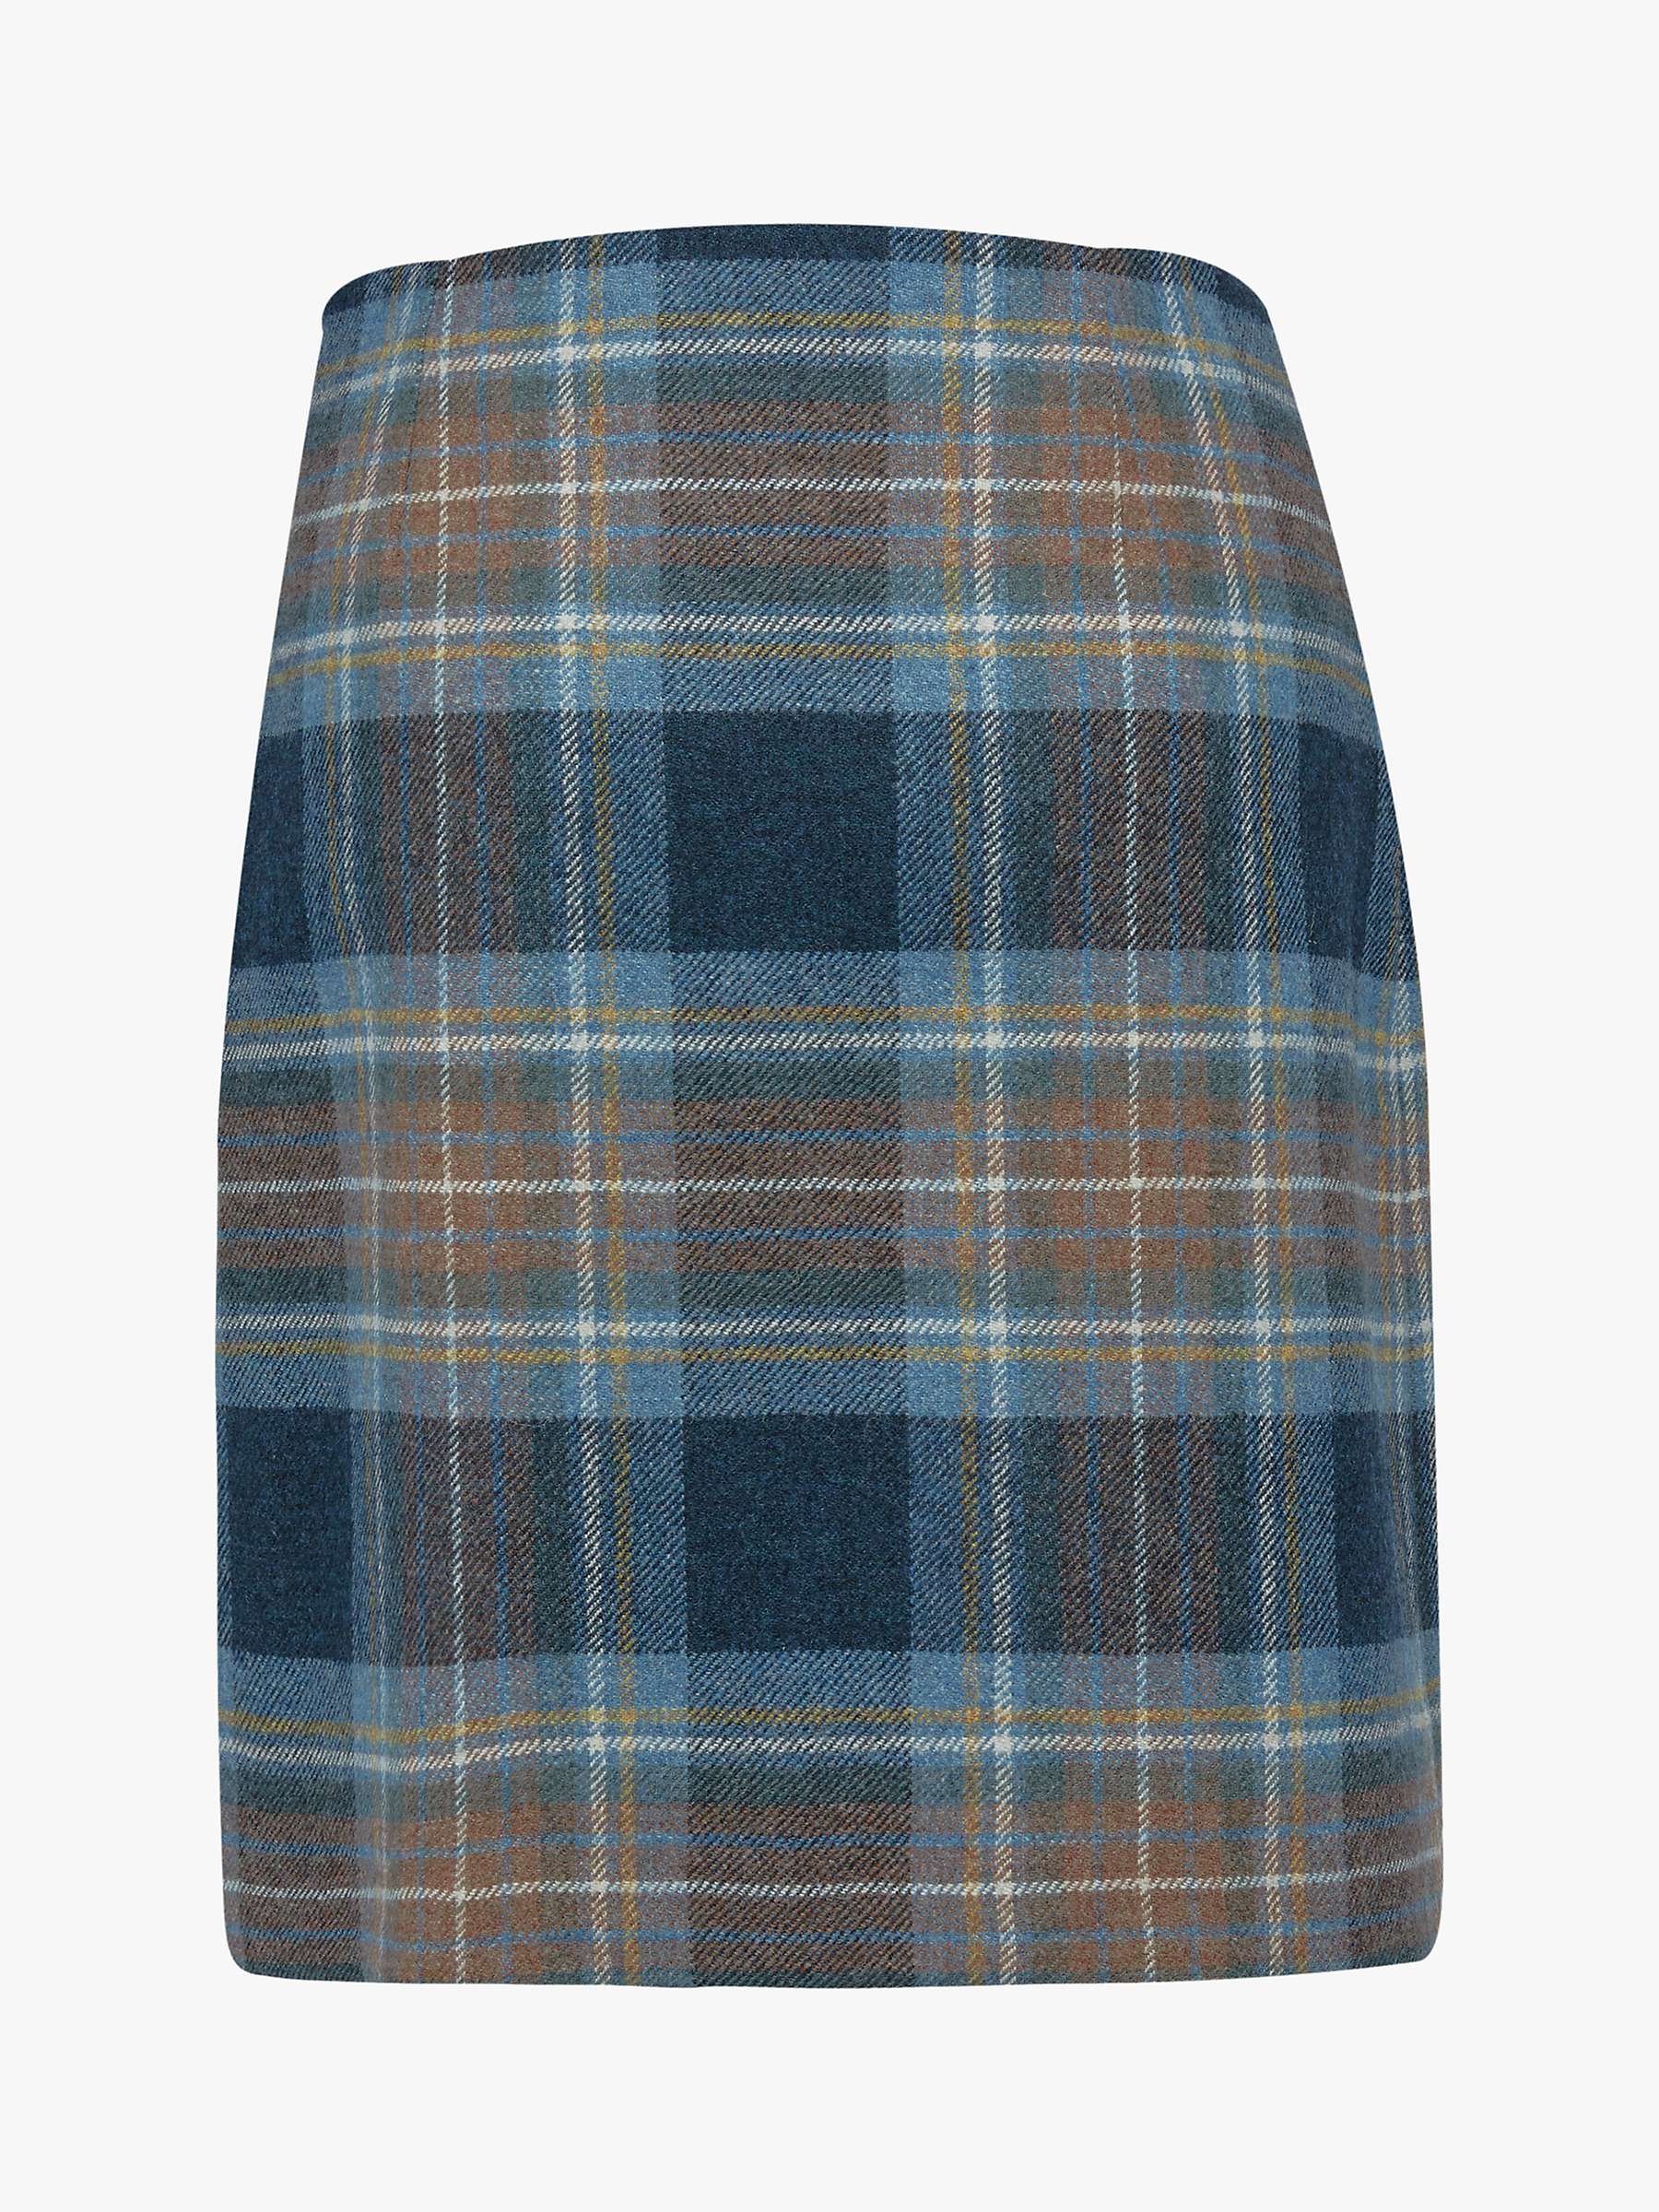 Buy Celtic & Co. The Celt Wool Skirt, Blue Ink Tartan Online at johnlewis.com